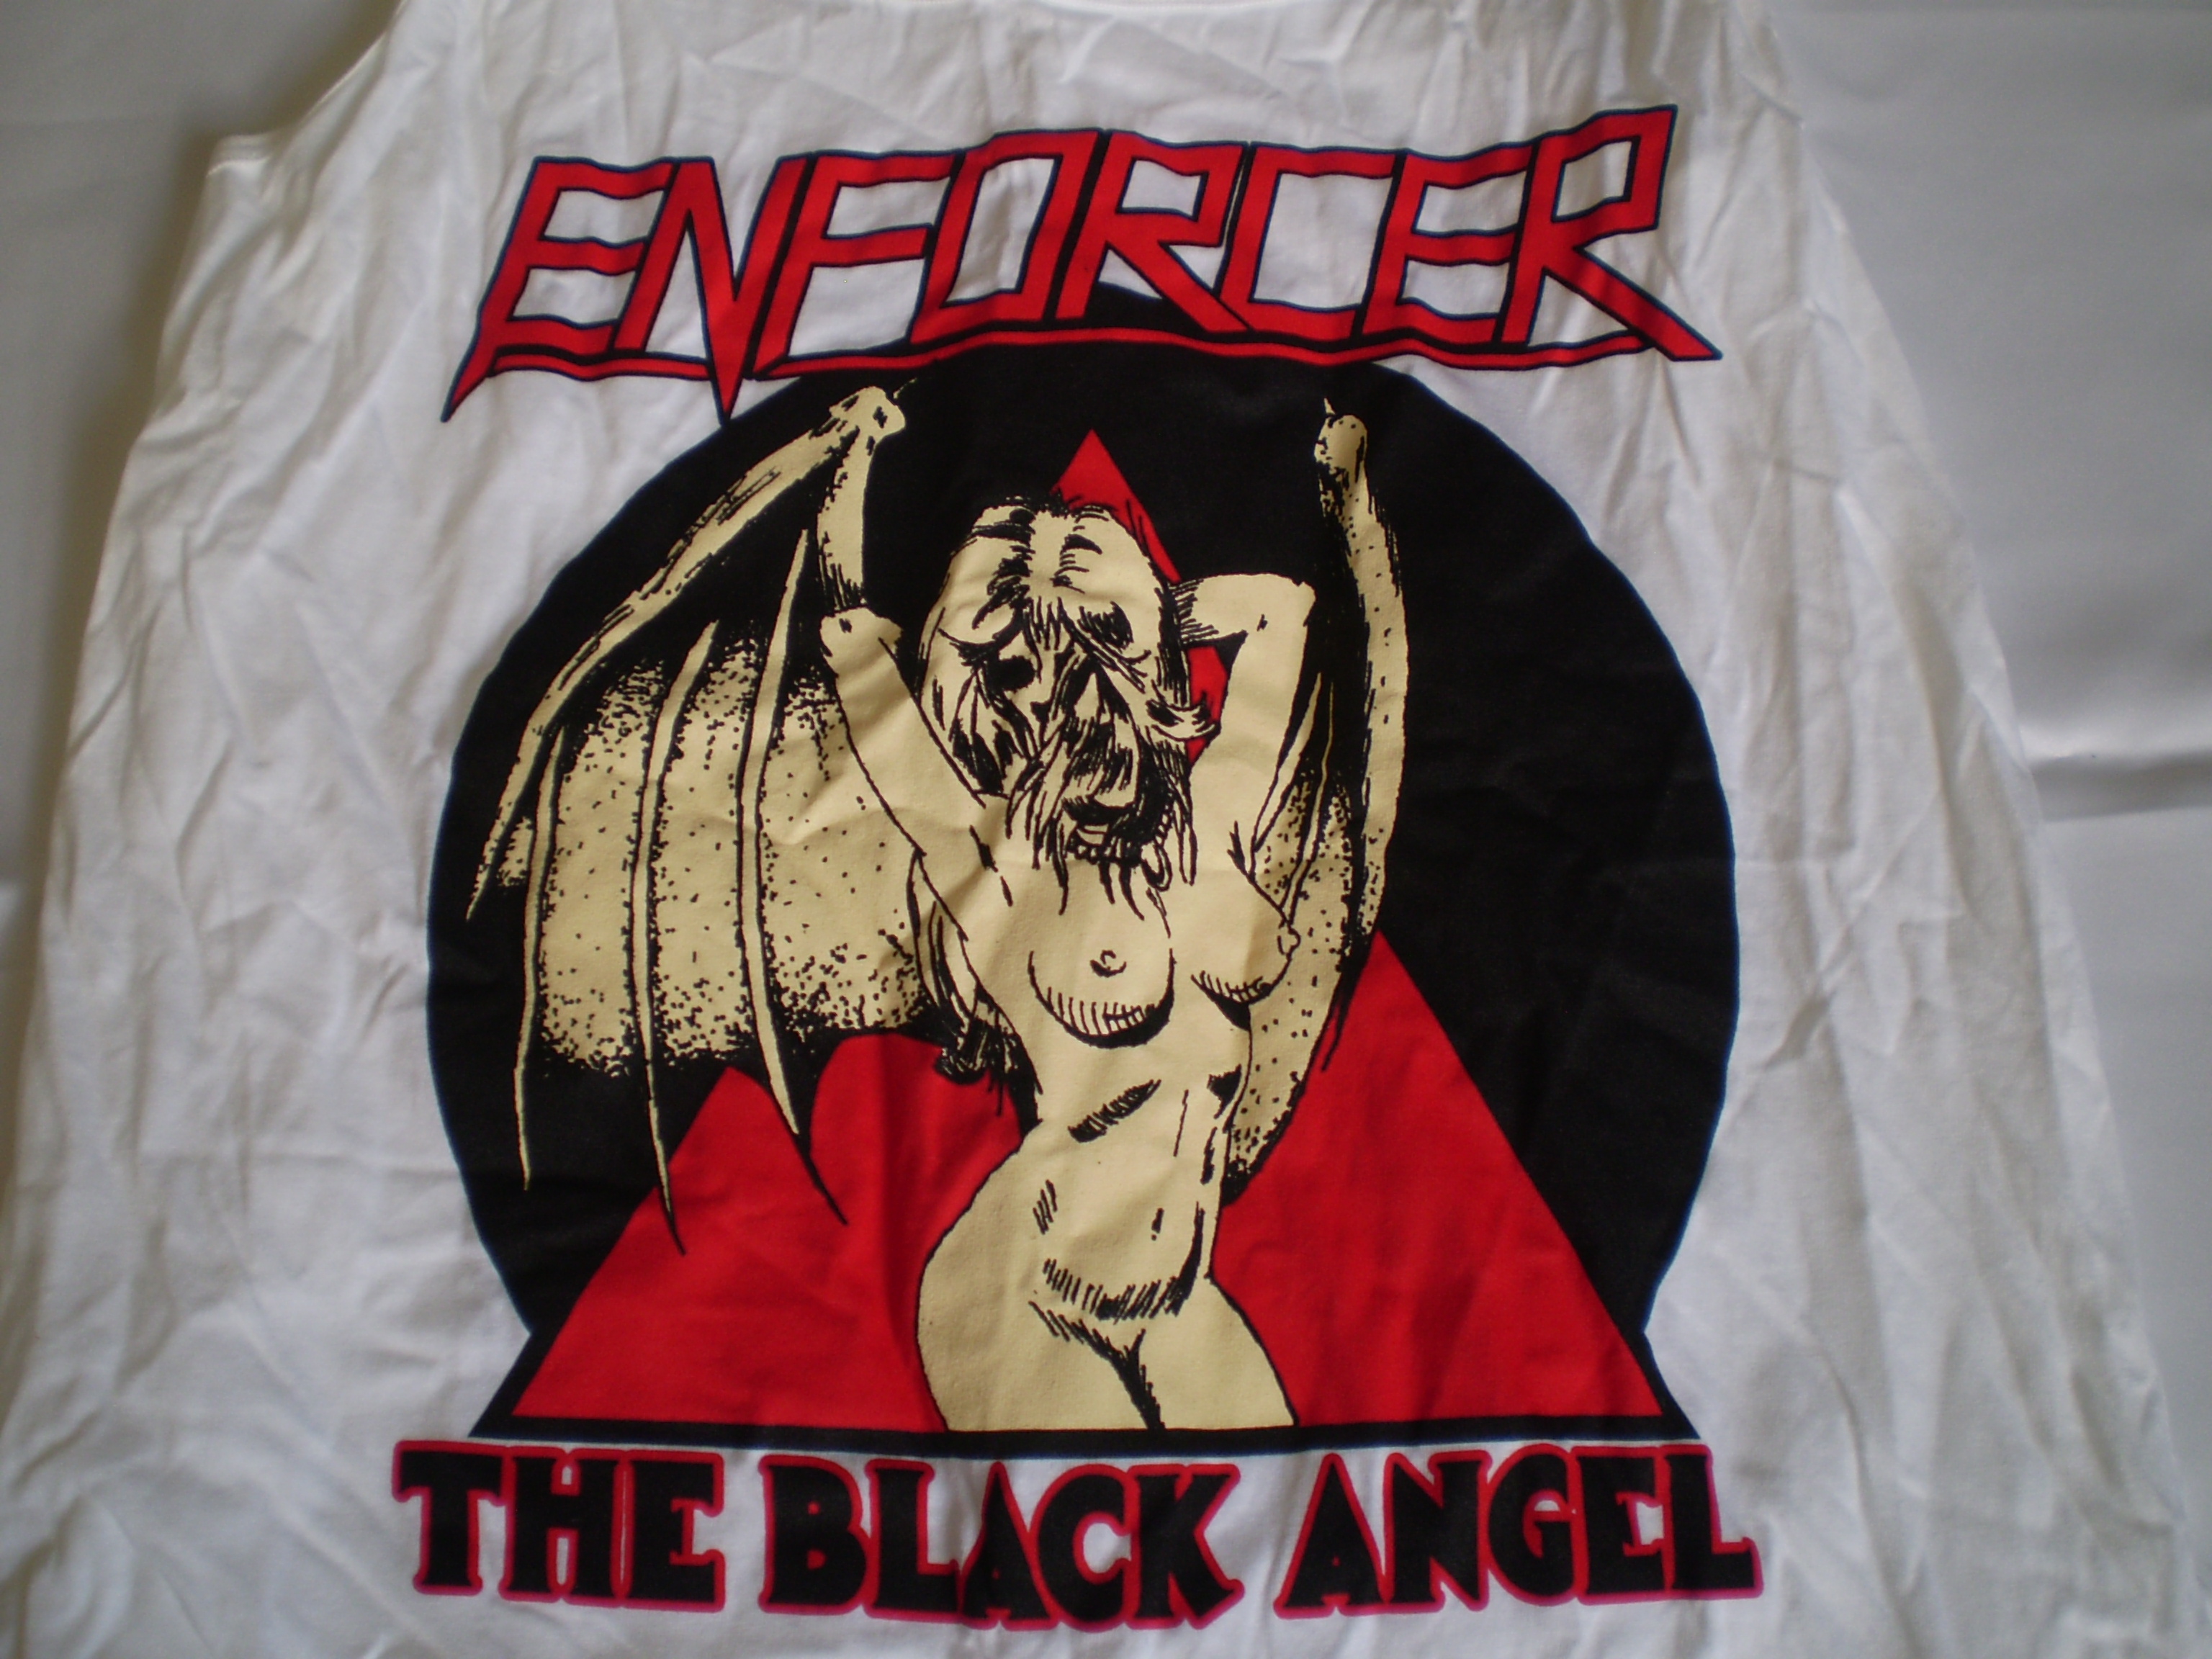 Enforcer - The Black Angel Girlie Tank